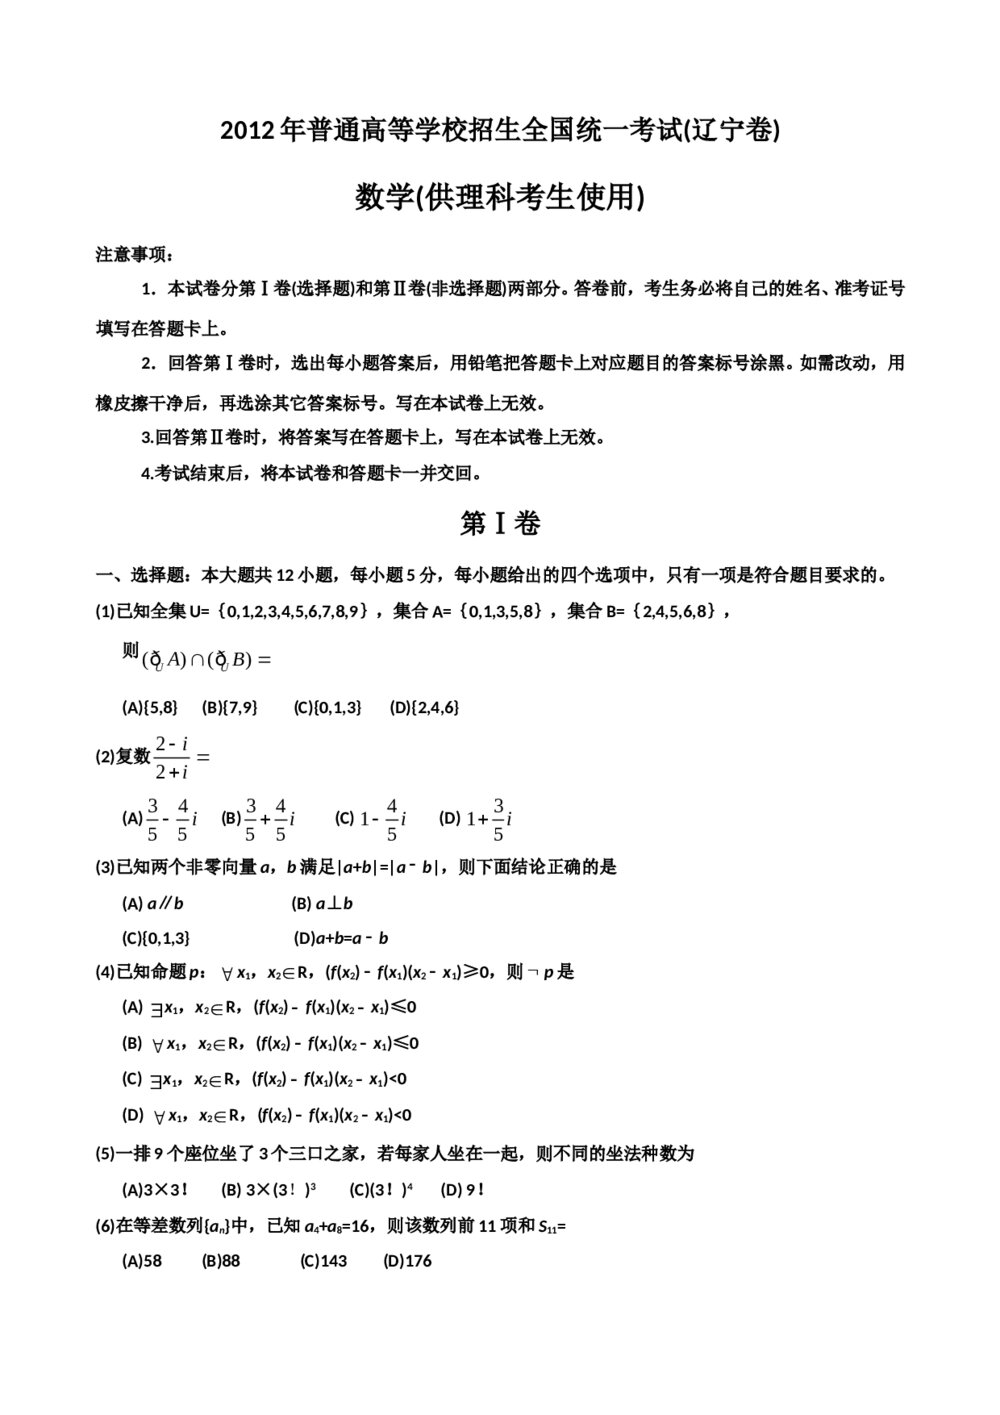 2012辽宁省高考数学(理科)试题试卷